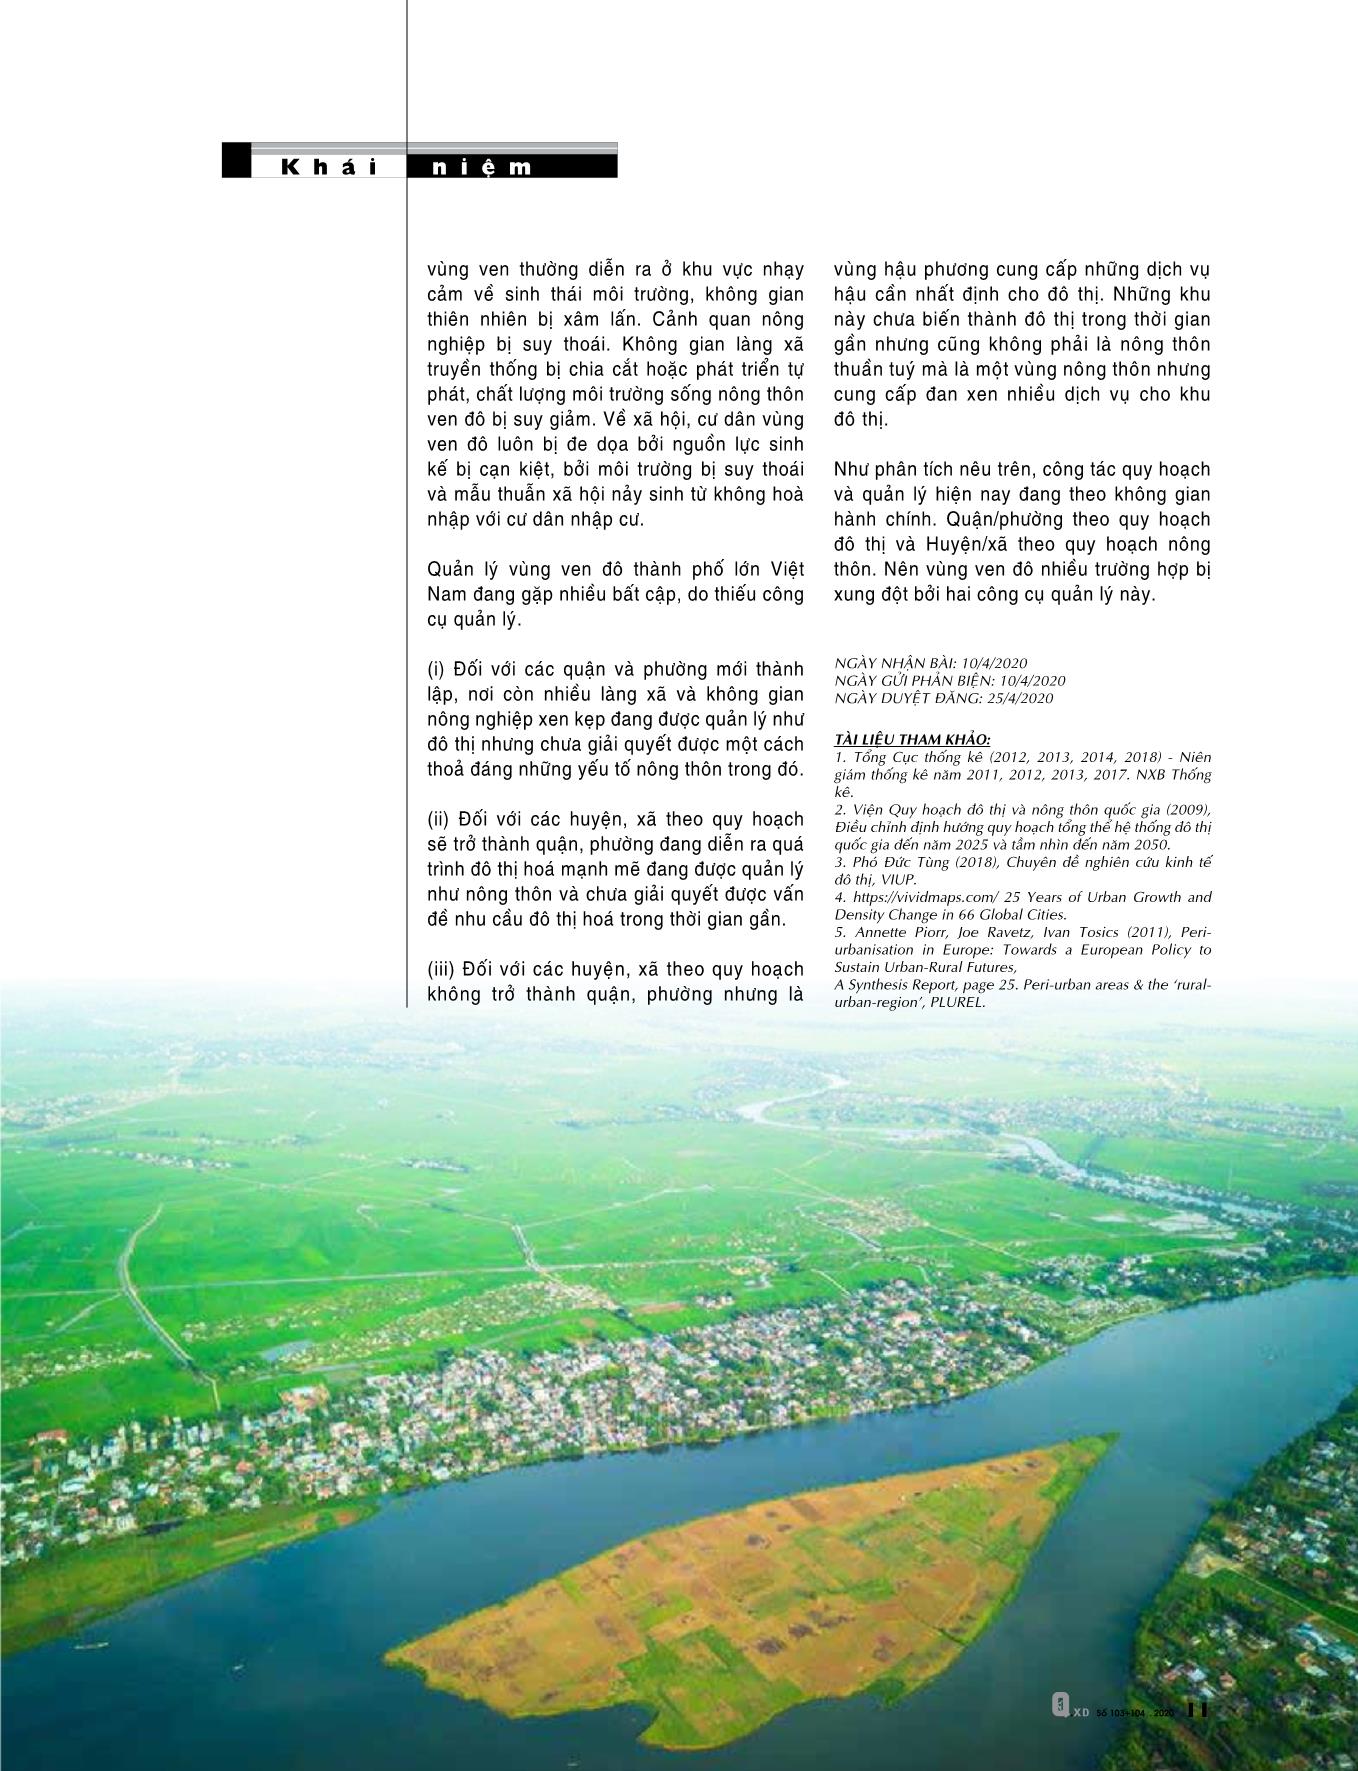 Khái niệm và các vấn đề của khu vực ven đô các thành phố lớn trên thế giới và Việt Nam trang 5